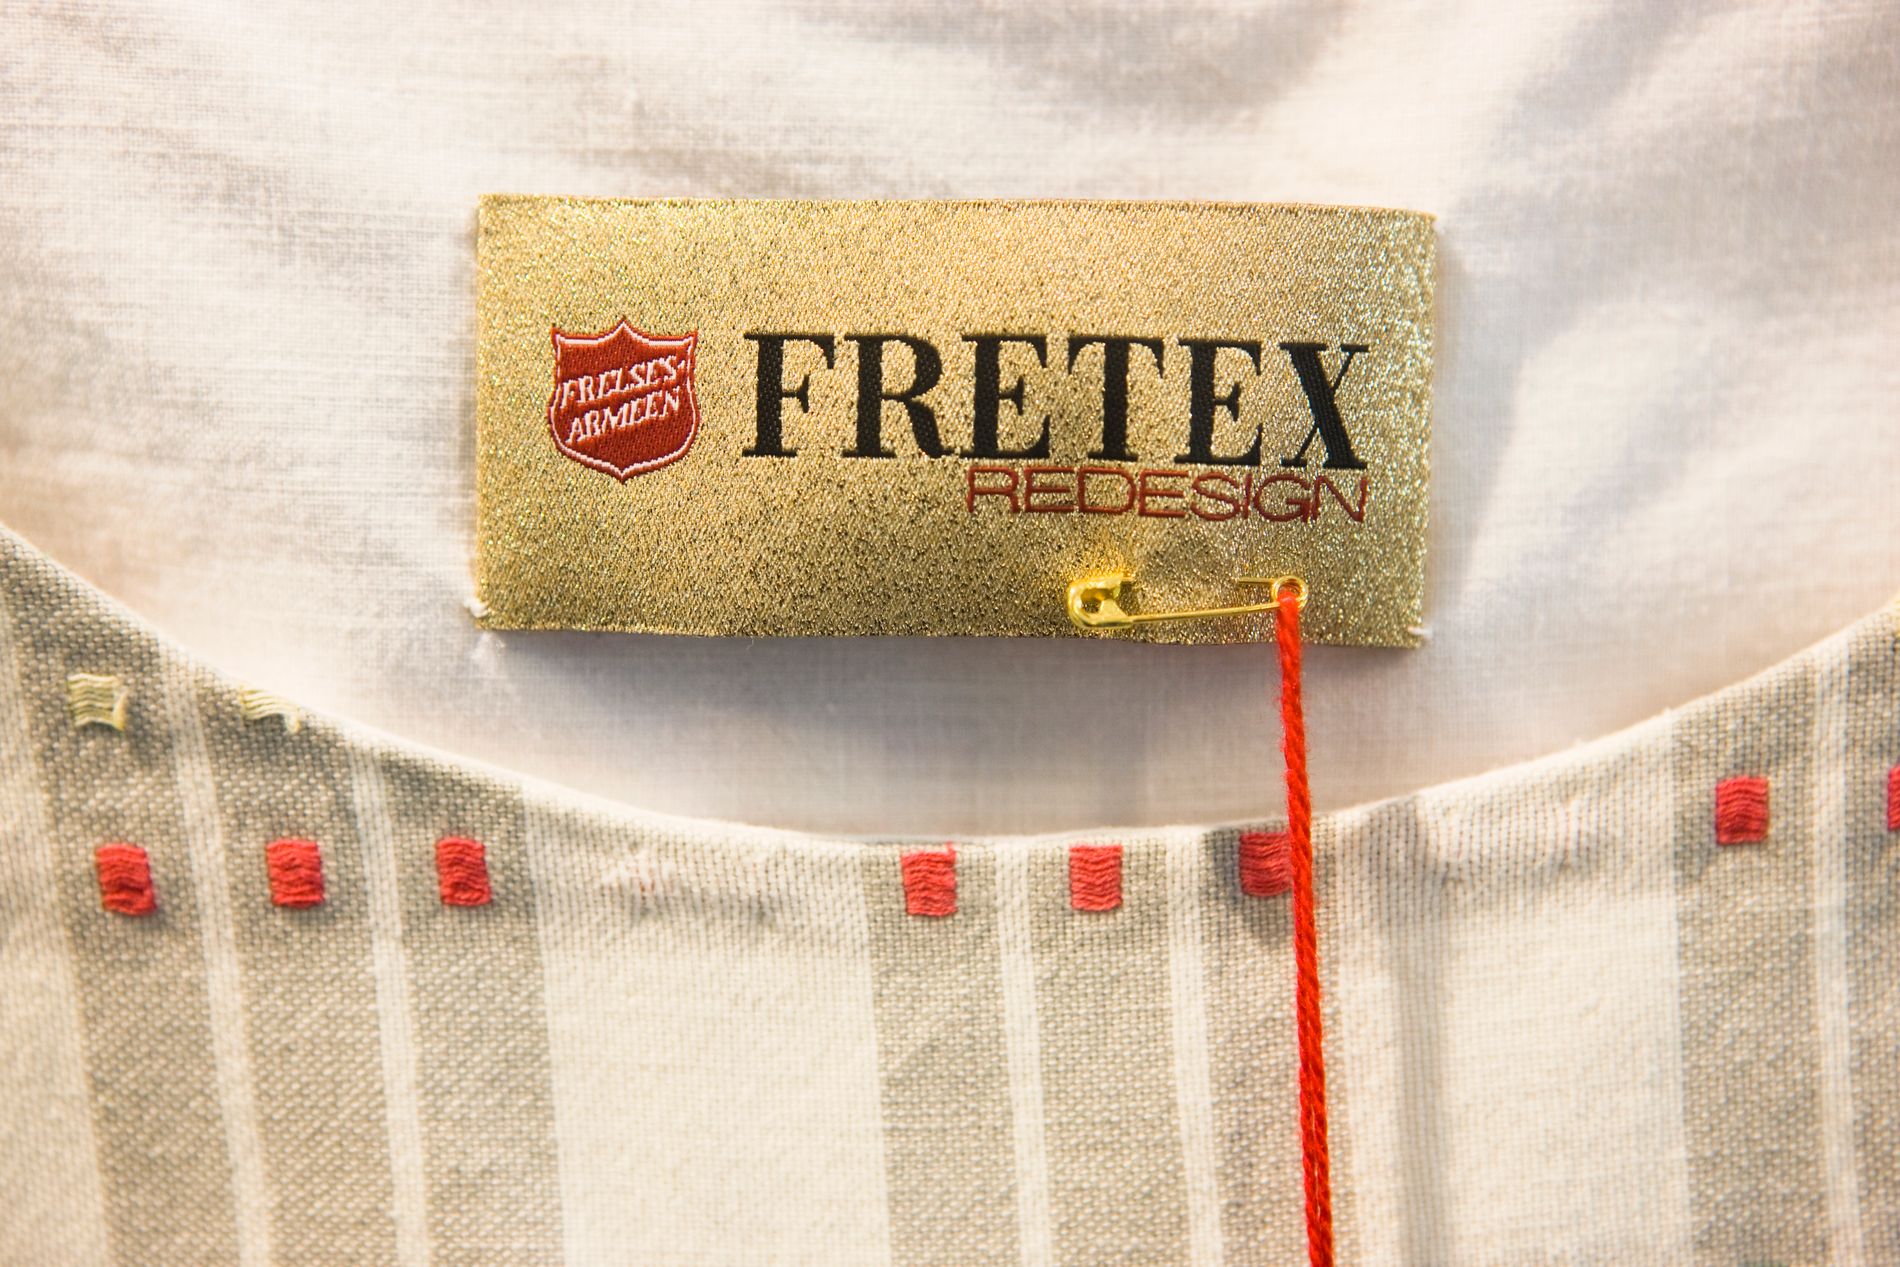 Fretex driver også med redesign, men klær av syntetiske tekstiler som er ødelagte, må som regel destrueres. 